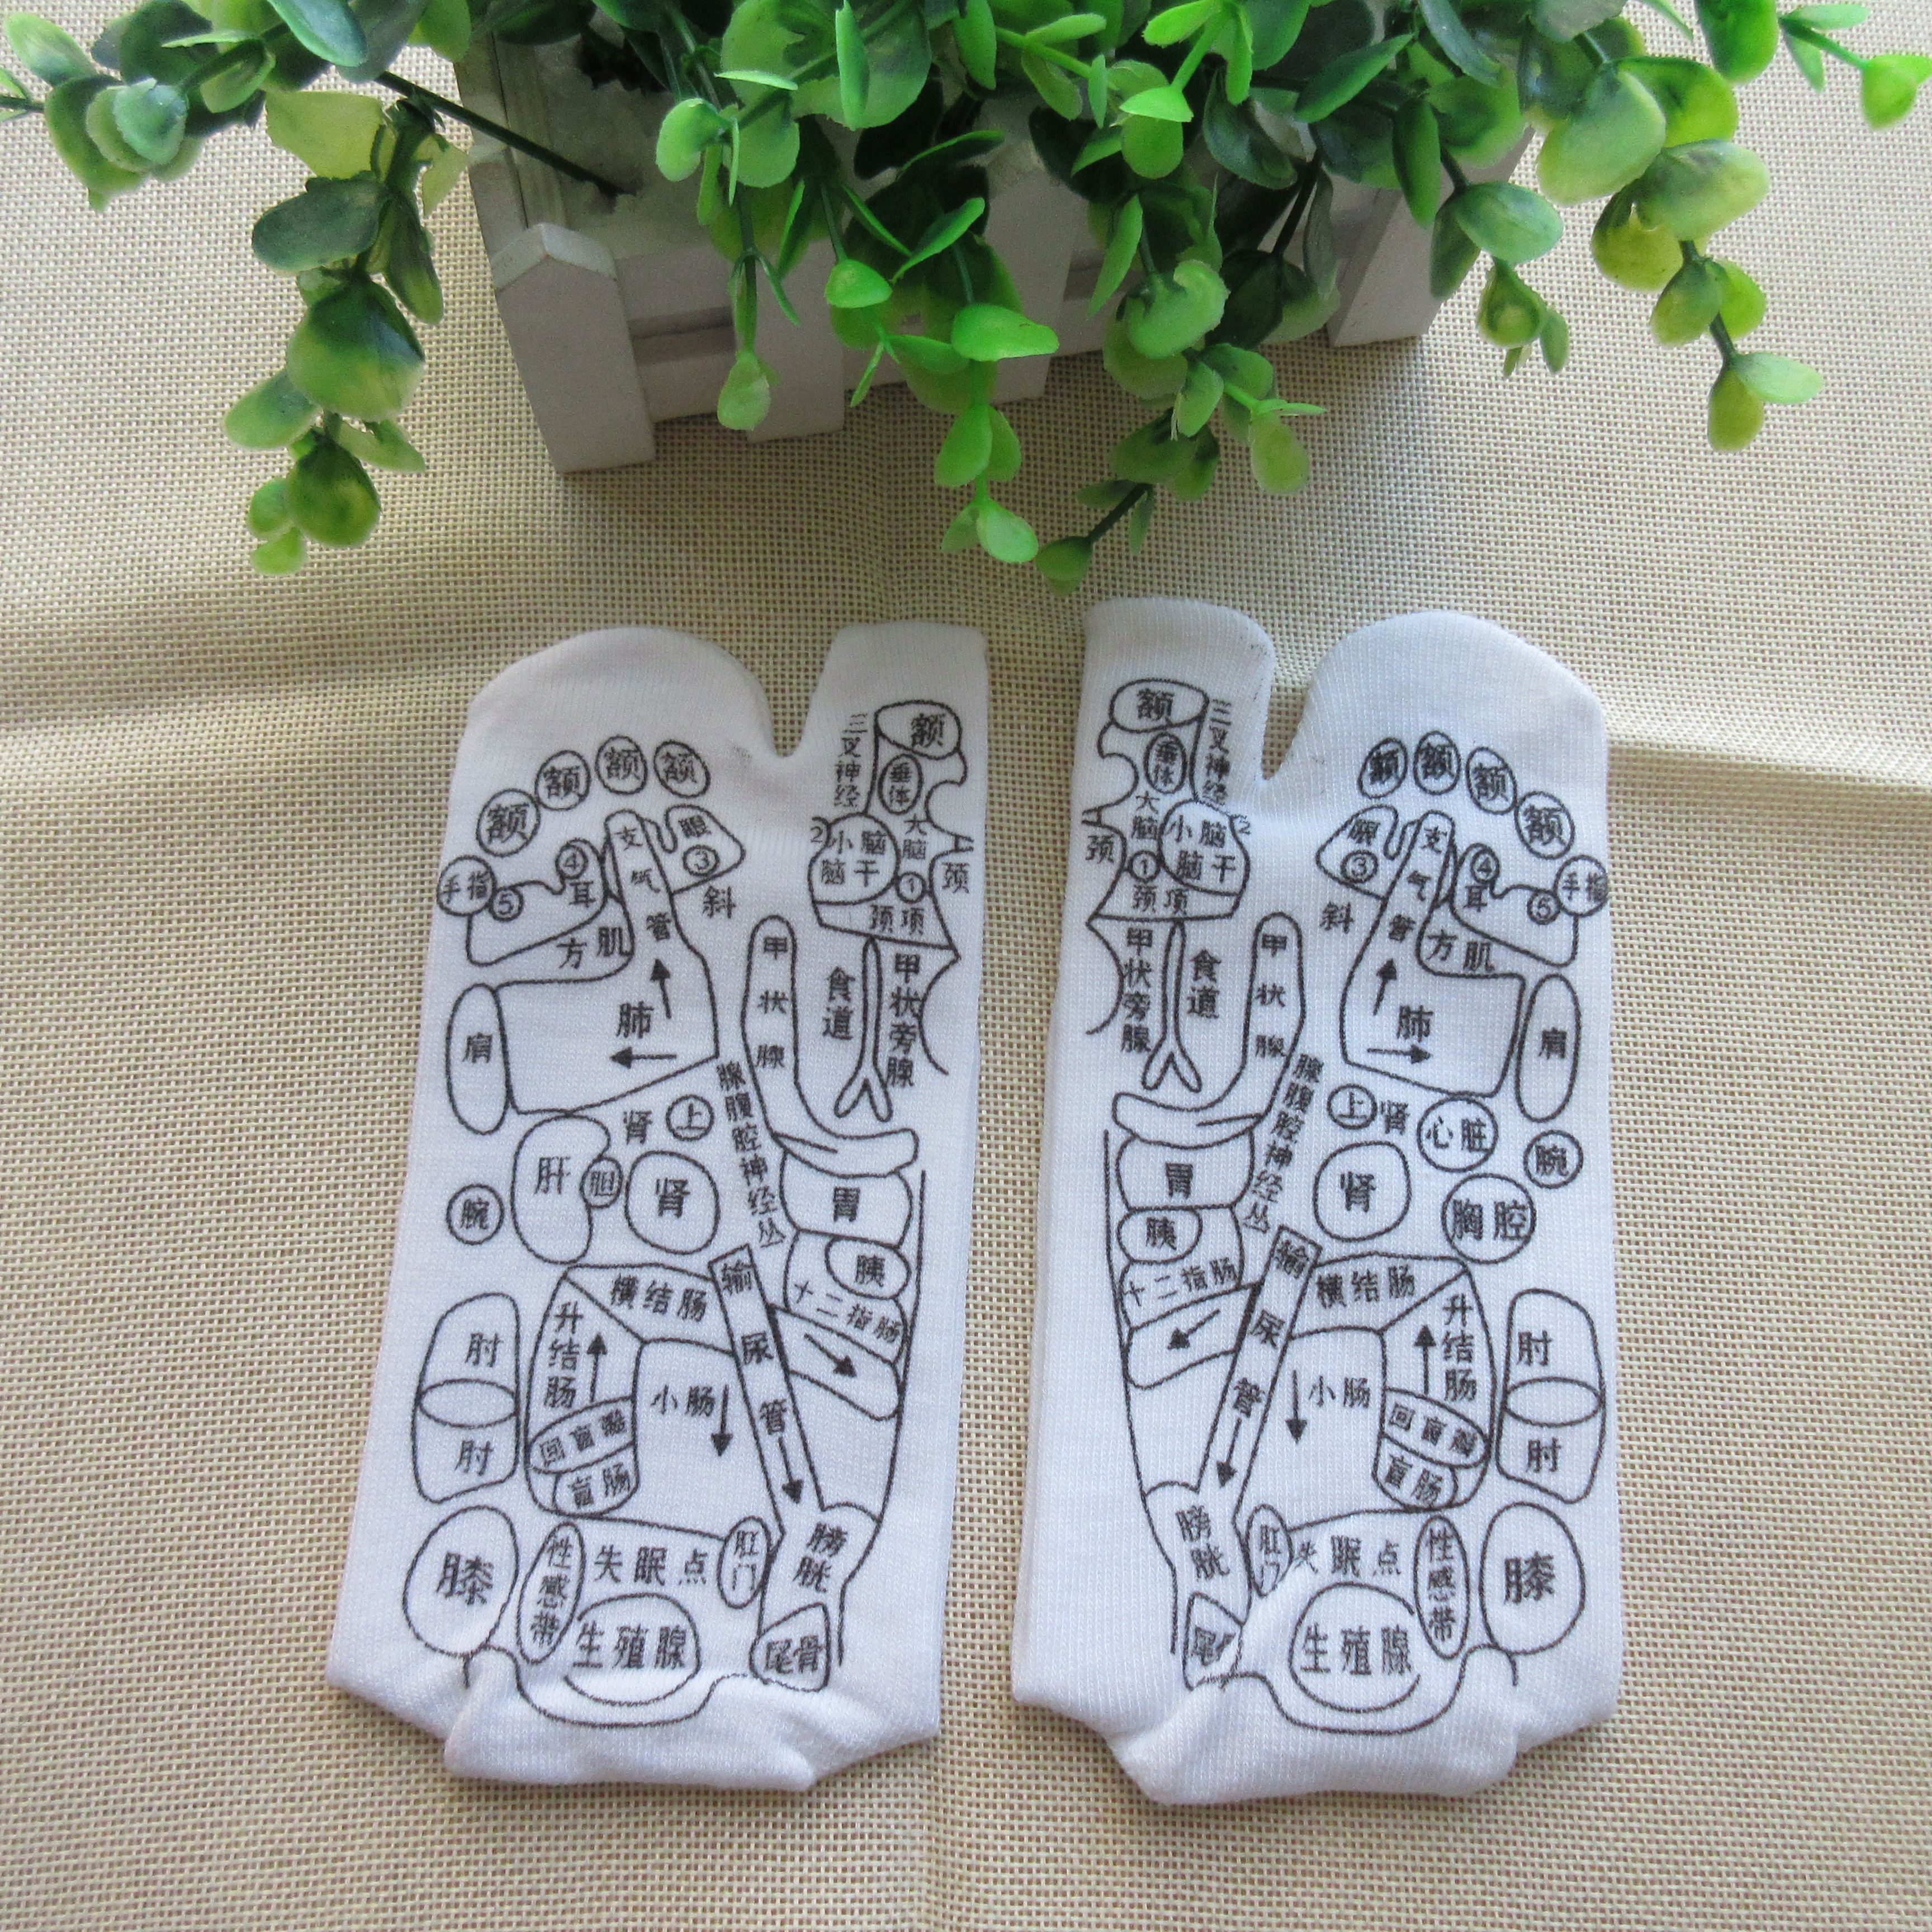 天津市穴位袜厂家外贸礼品出口亚马逊产品足底穴位袜磁疗袜子生产加工